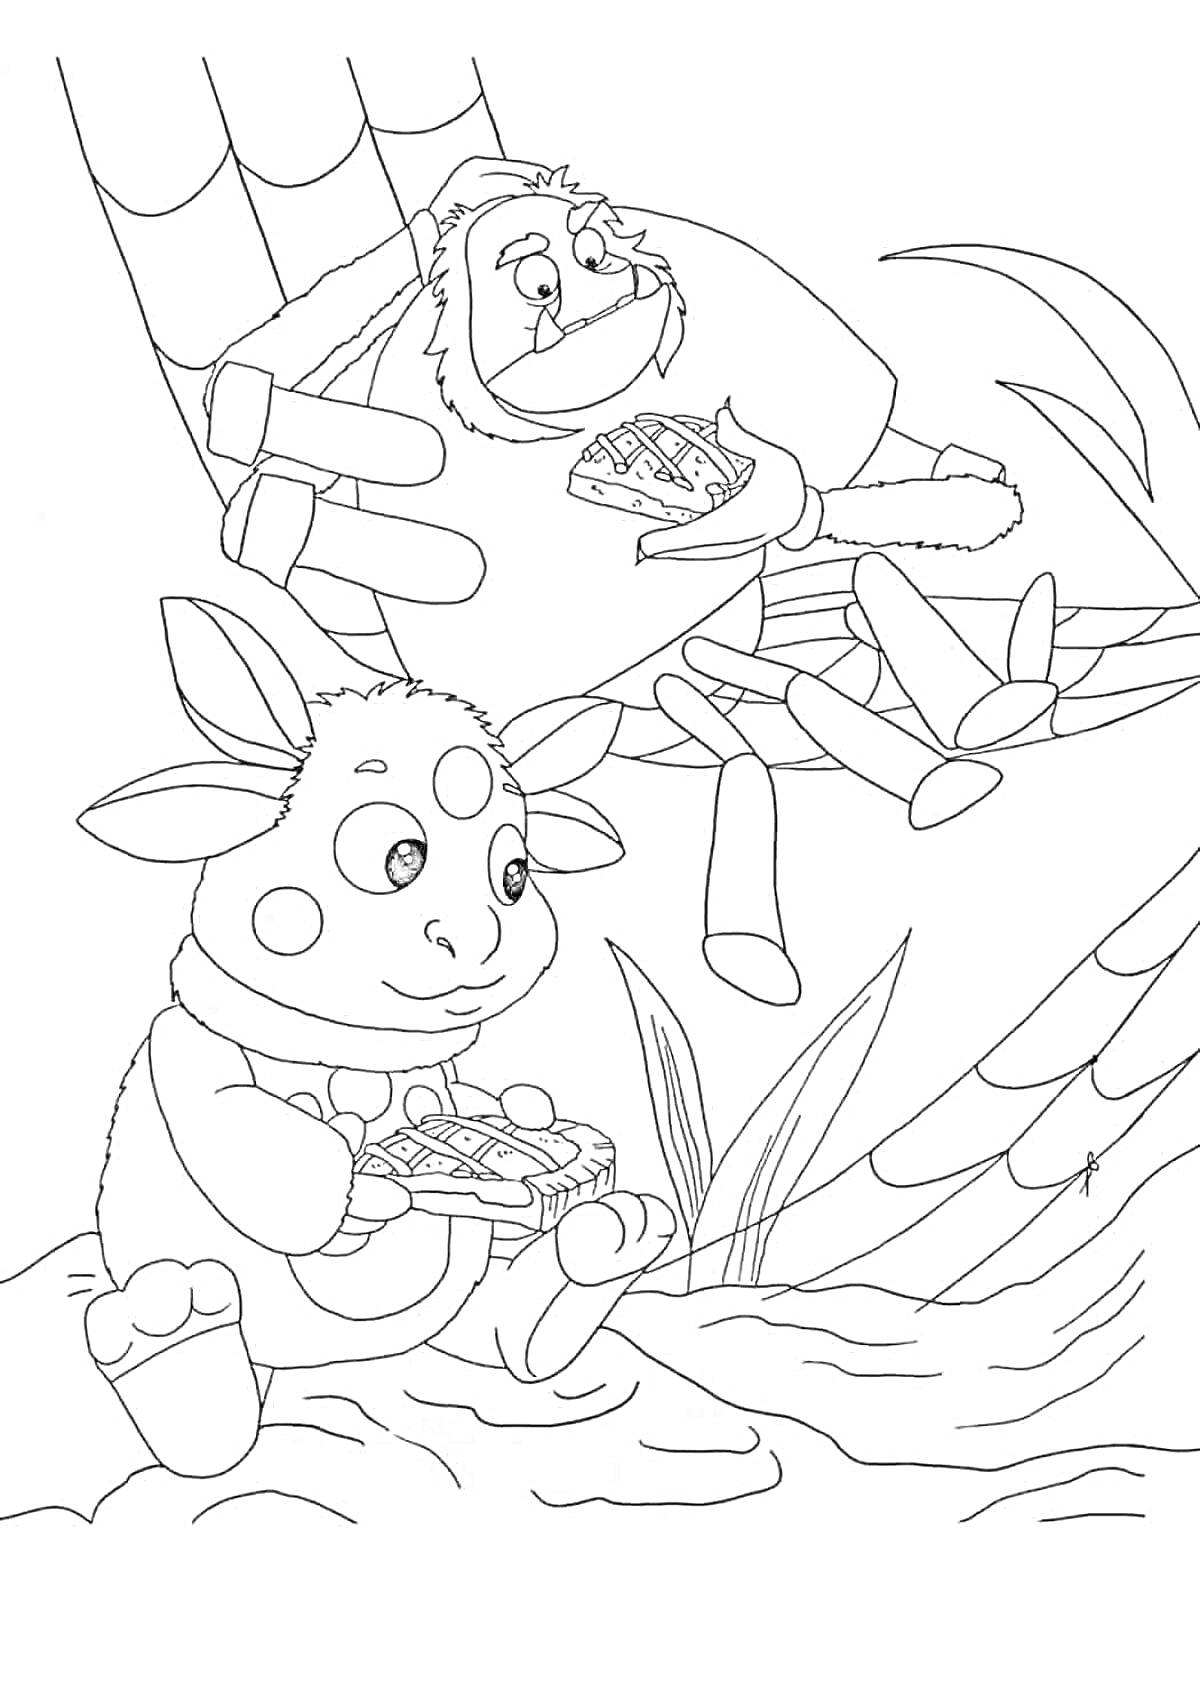 Раскраска Лунтик и его друг Кузя едят сладости на паутине